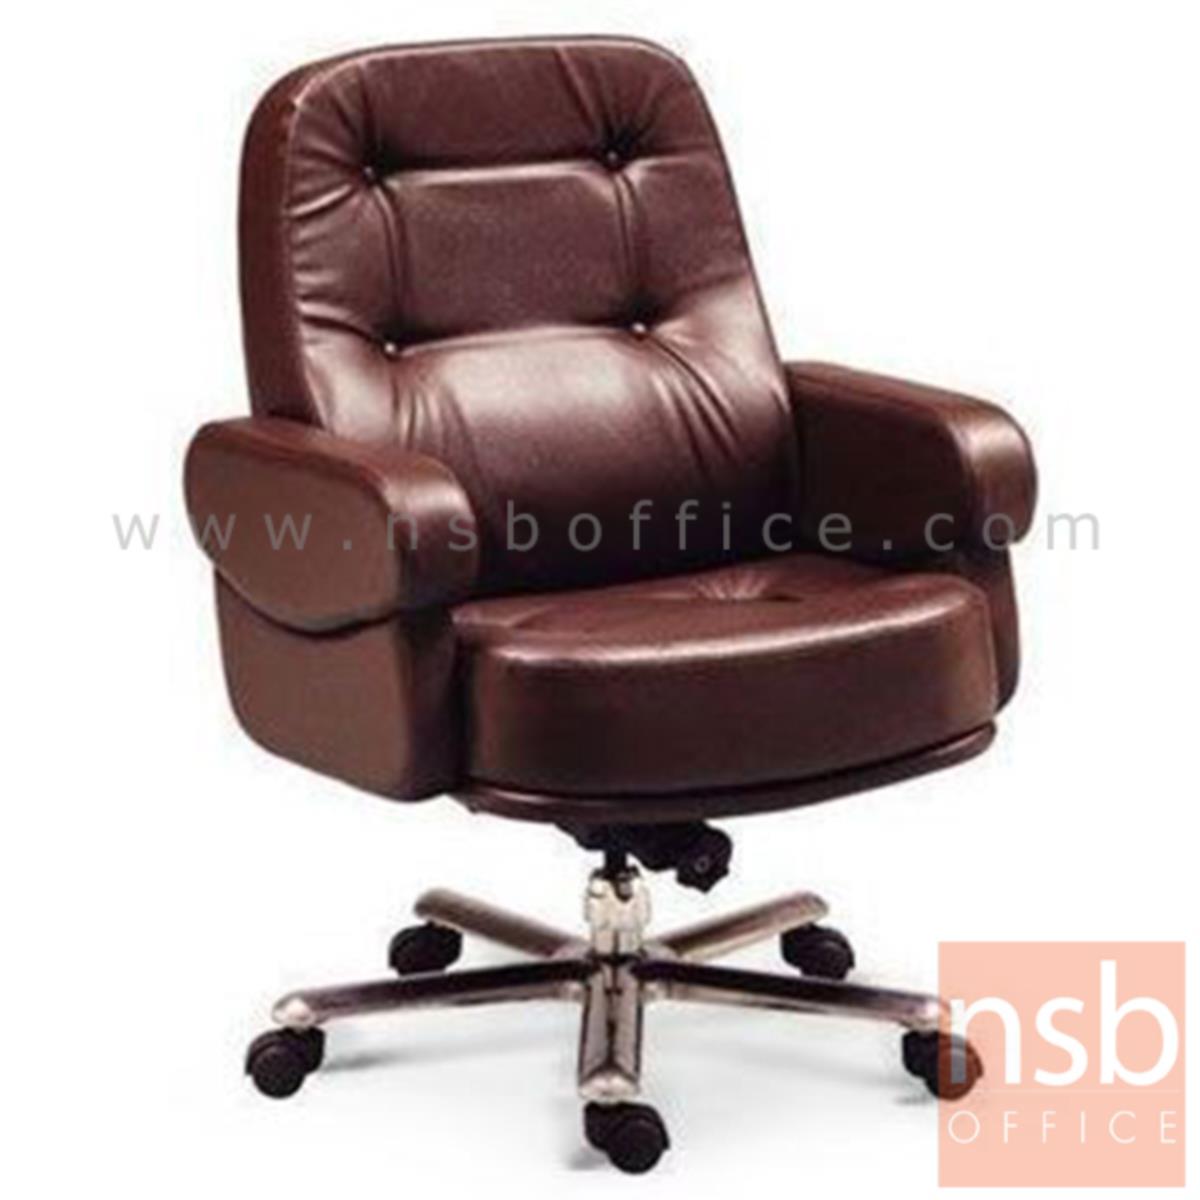 B03A465:เก้าอี้สำนักงานเบาะใหญ่ รุ่น Eleanor (เอเลนอร์)  ขาอลูมิเนียม